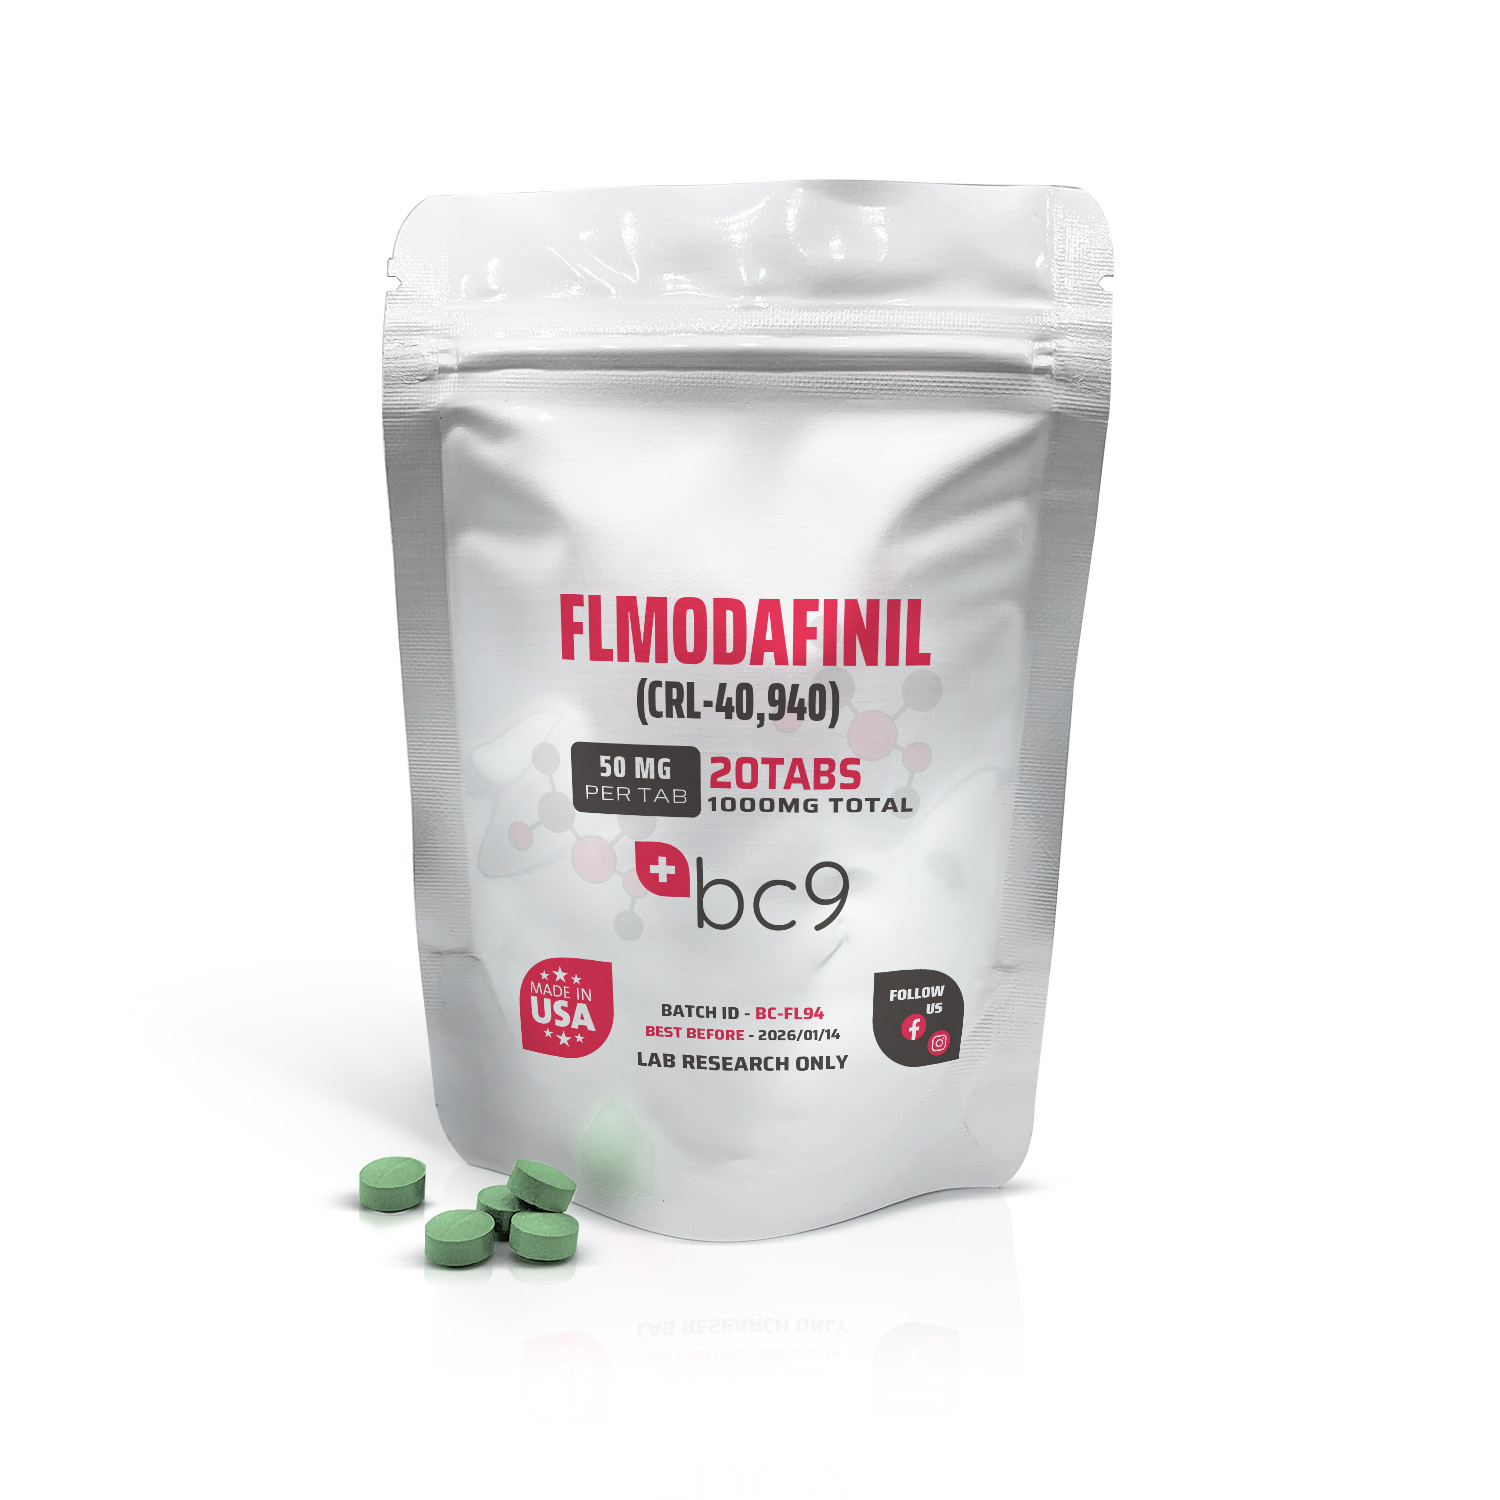 FLModafinil (CRL-40,940) Tablets For Sale | BC9.org